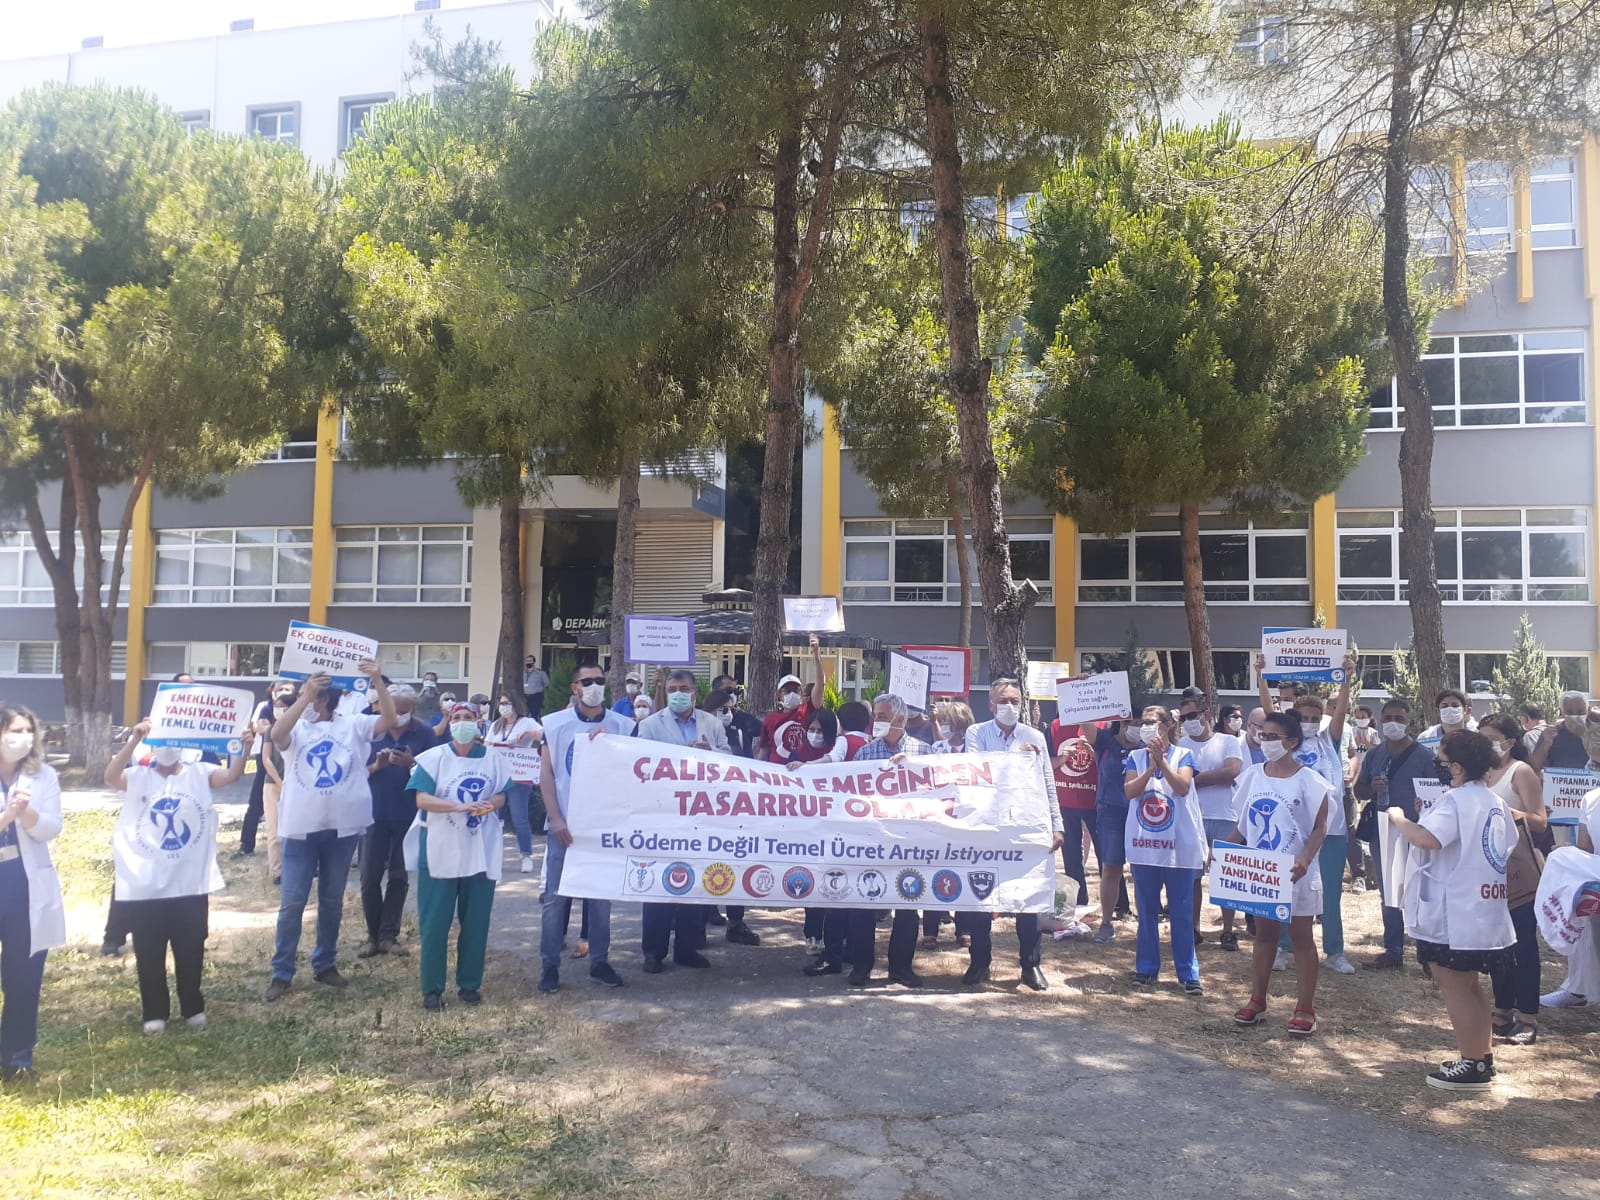 İzmir Dokuz Eylül Üniversitesi Tıp Fakültesi Hastanesi'ndeki Eyleme Destek Artıyor